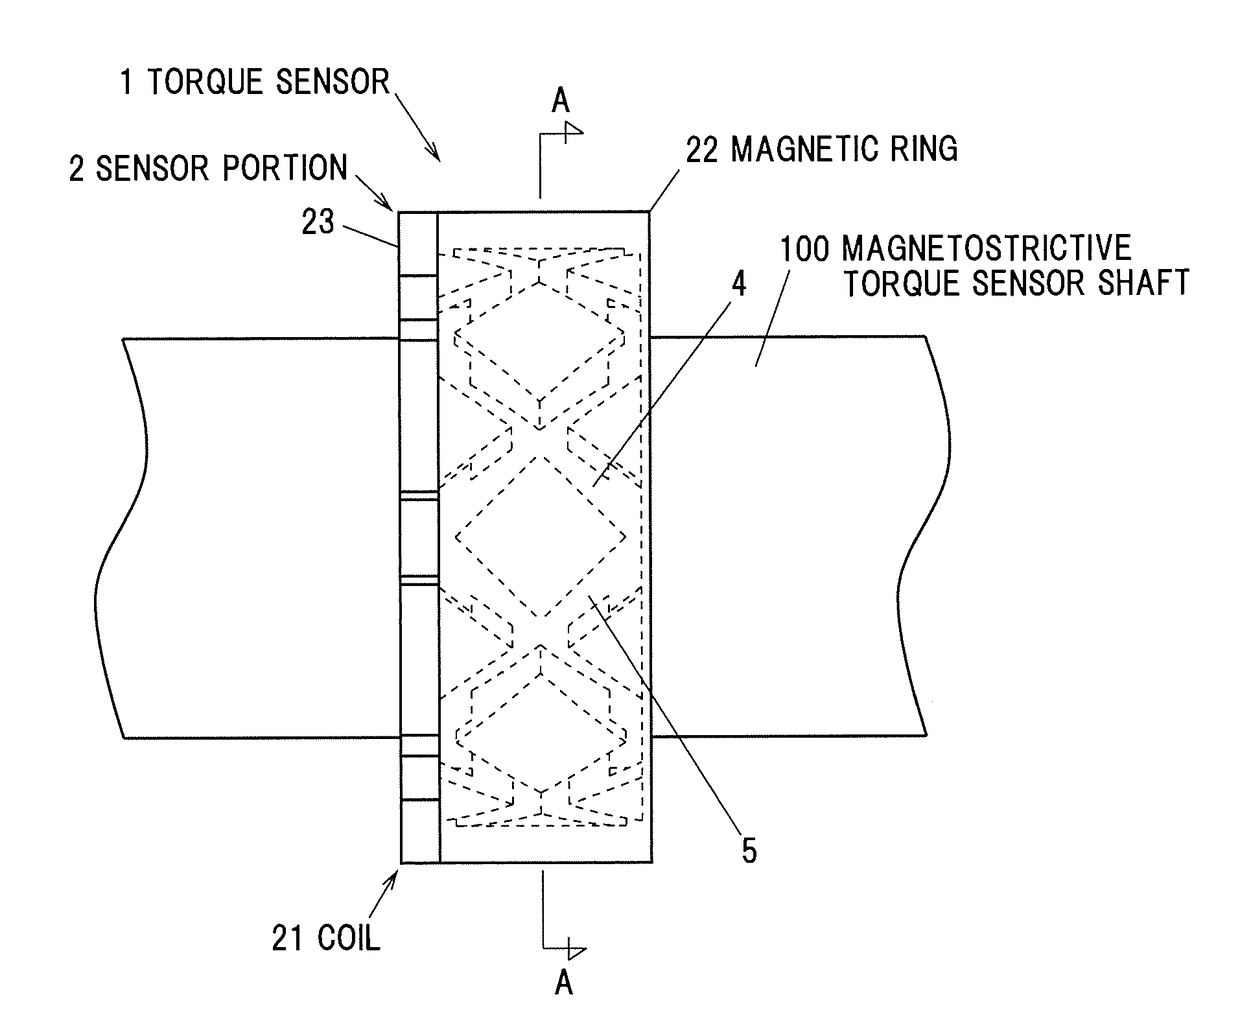 Method for manufacturing magnetostrictive torque sensor shaft